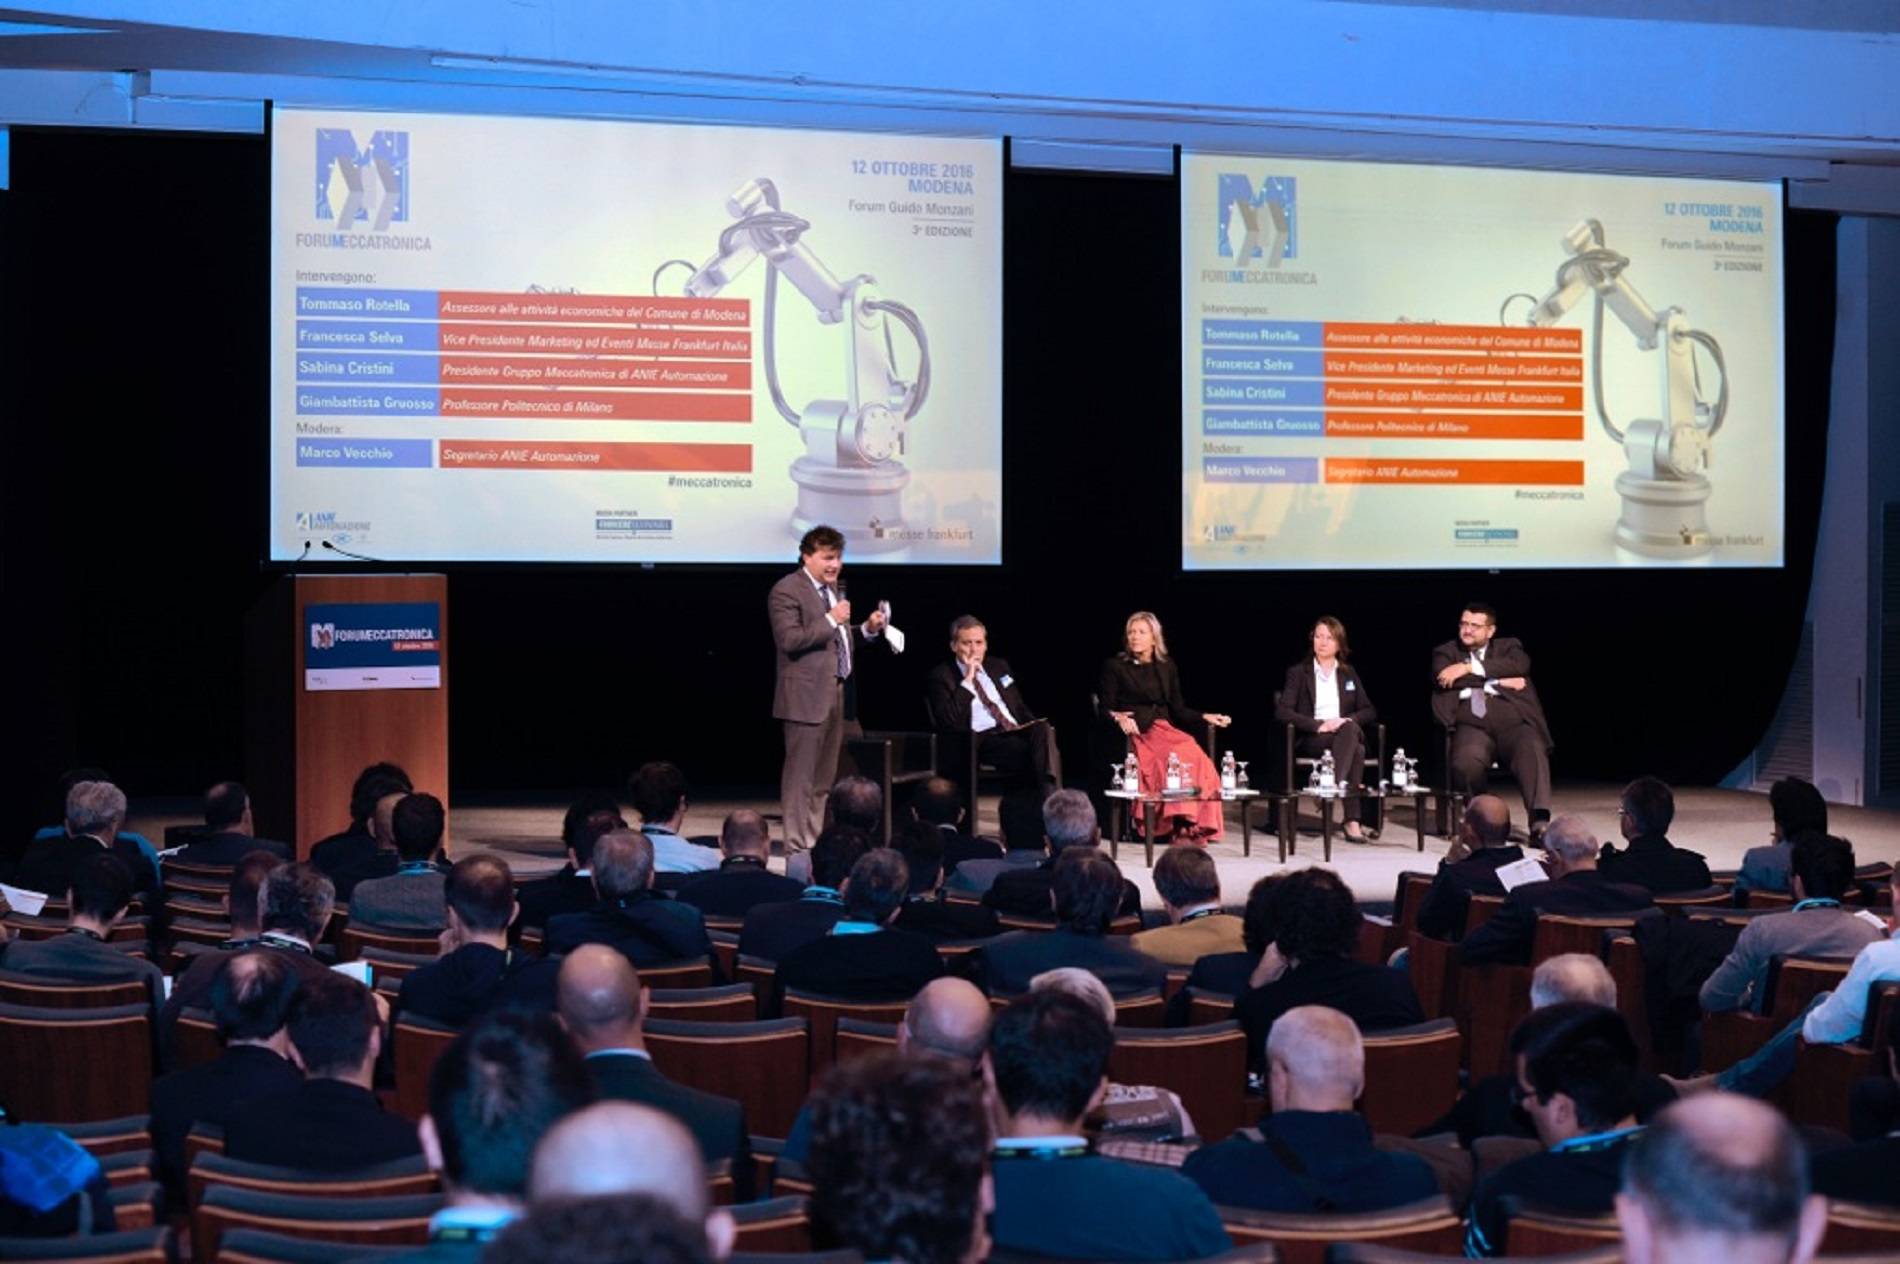 La cultura 4.0 ha successo a Modena con Forum Meccatronica